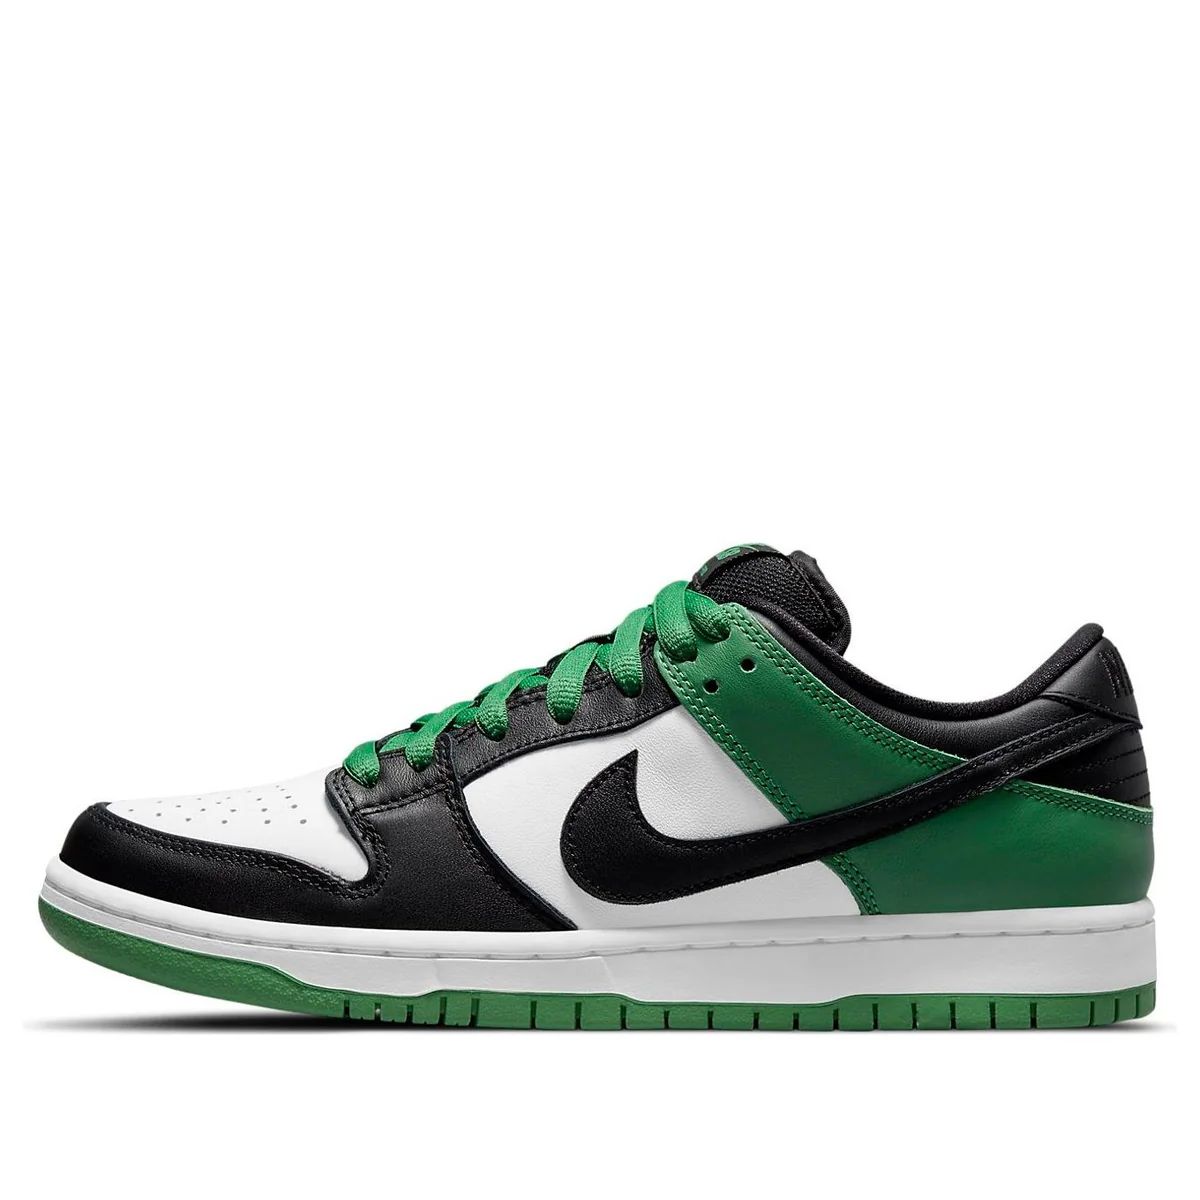 Nike SB Dunk Low Pro 'Classic Green' BQ6817-302 | KICKS CREW